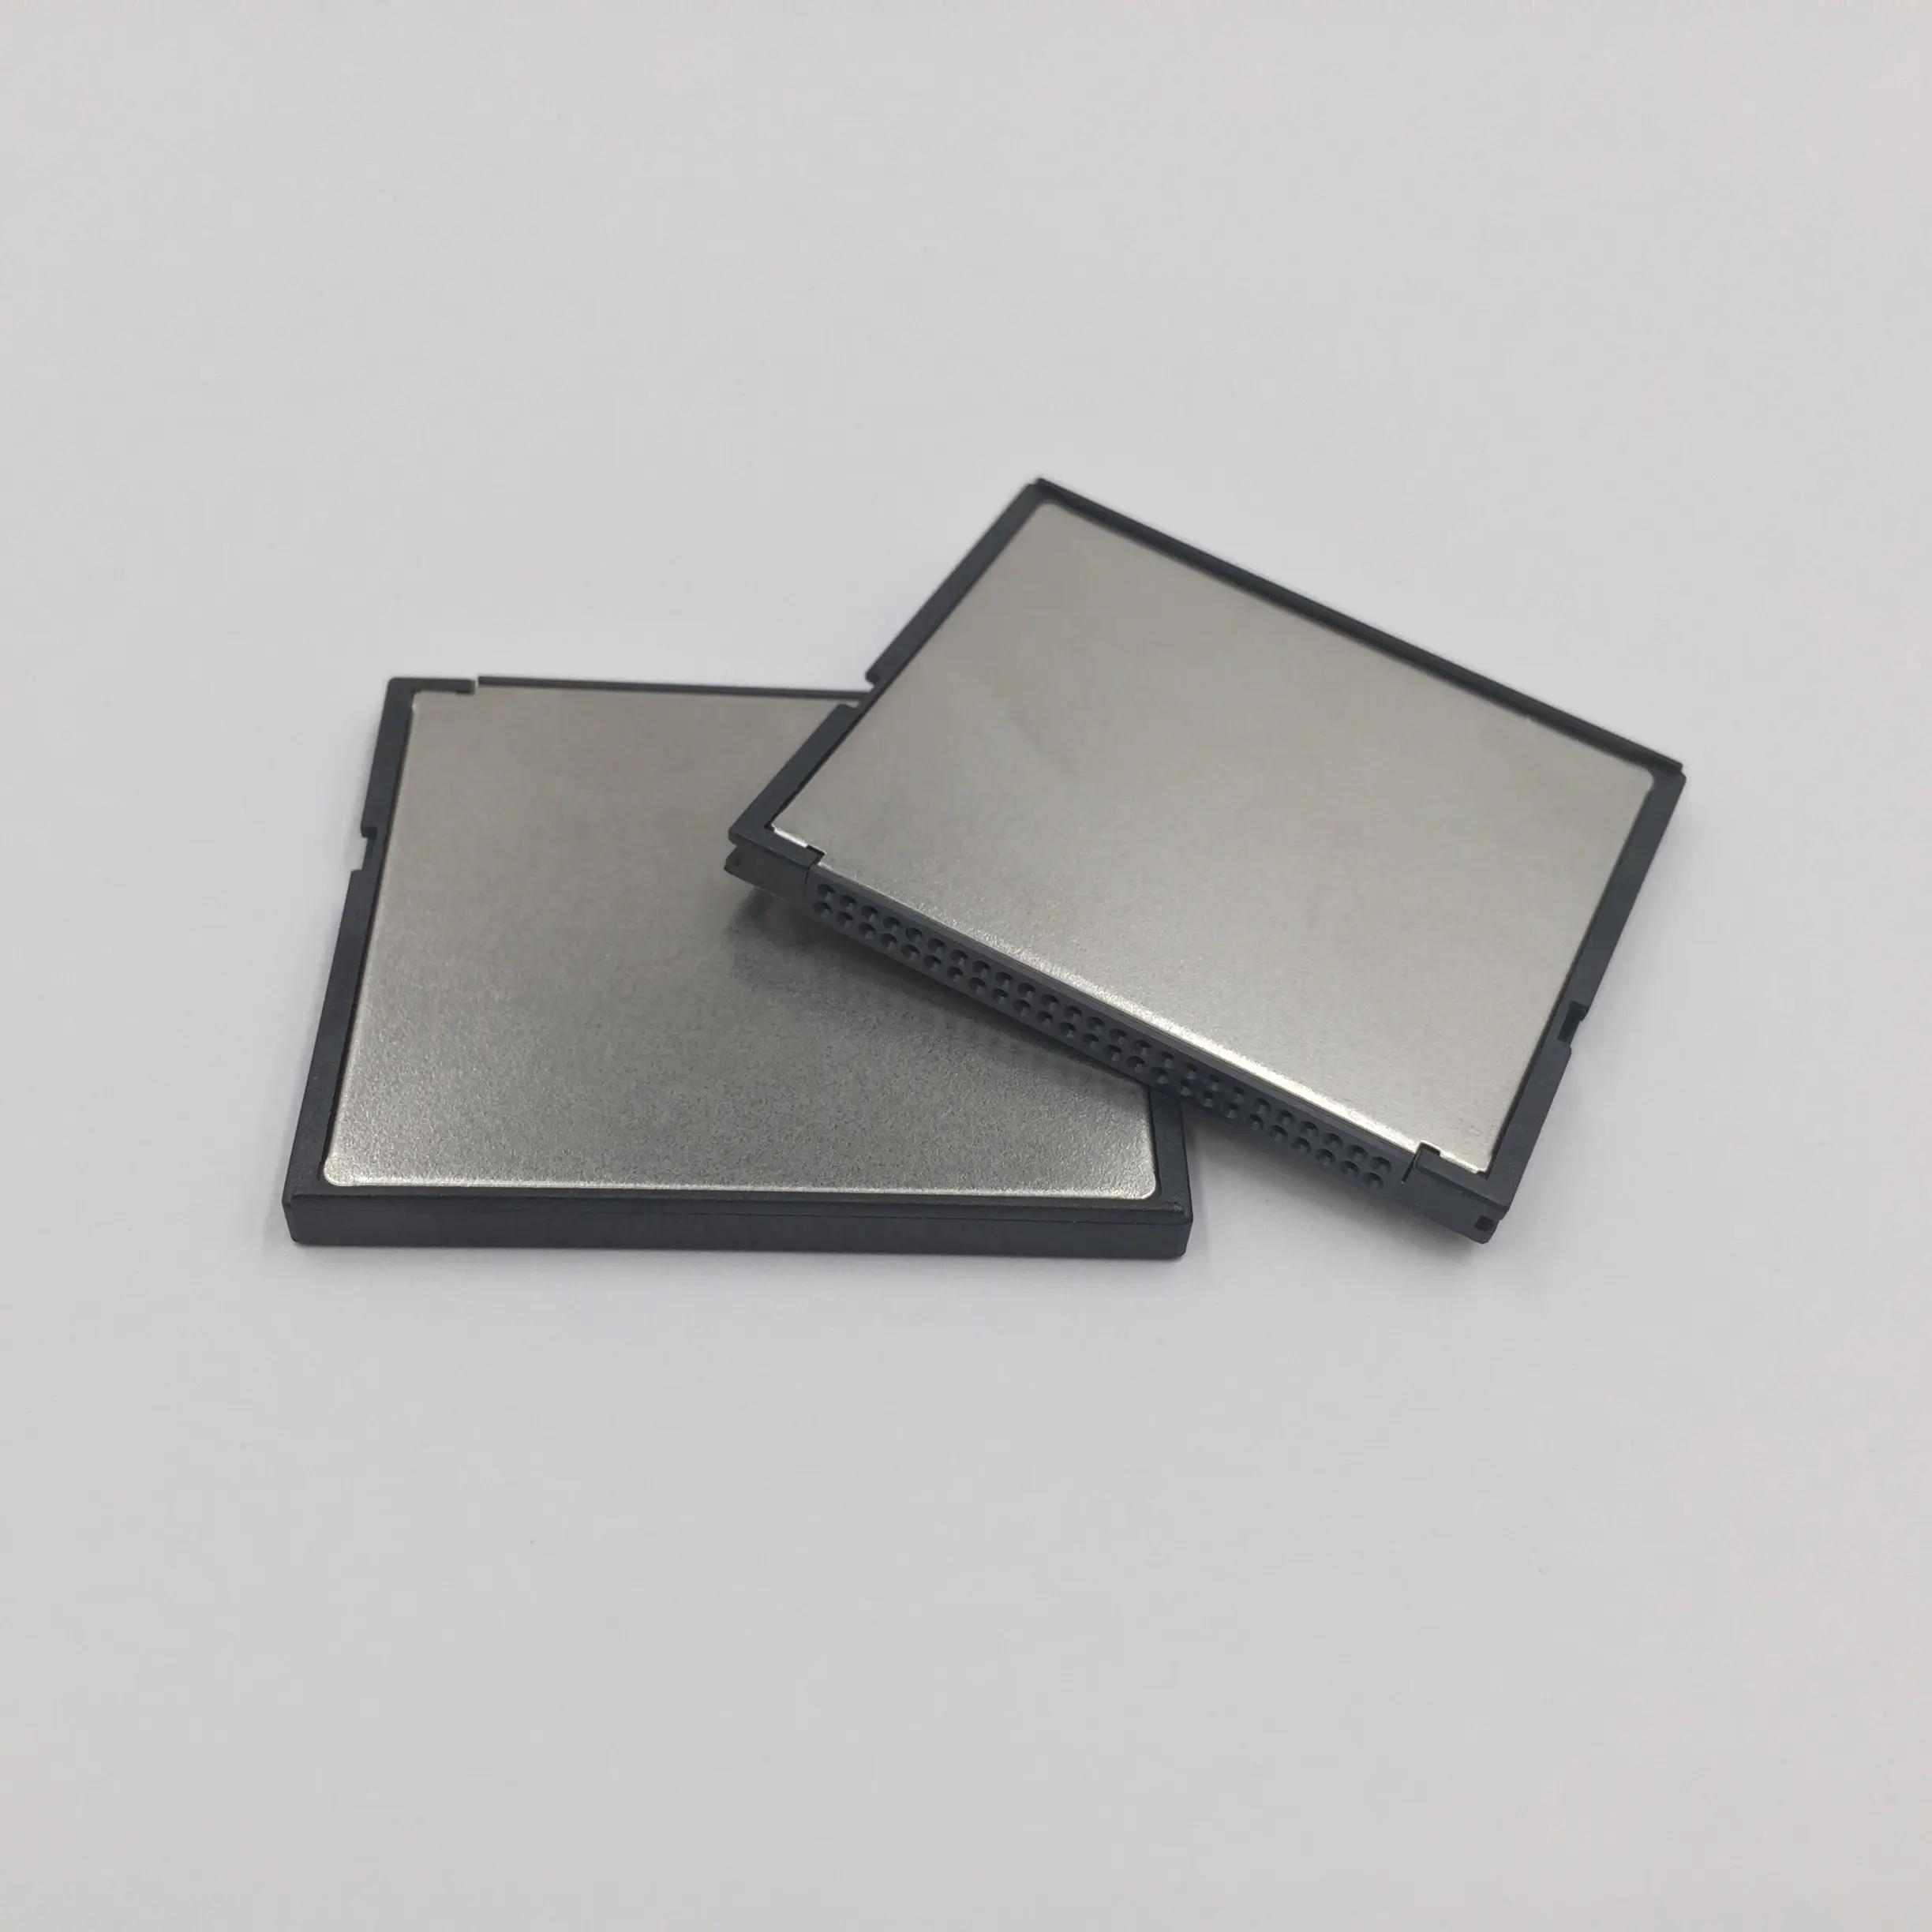 Tarjeta de memoria CF de calidad Original de fábrica, 2GB, tarjeta de memoria Flash compacta